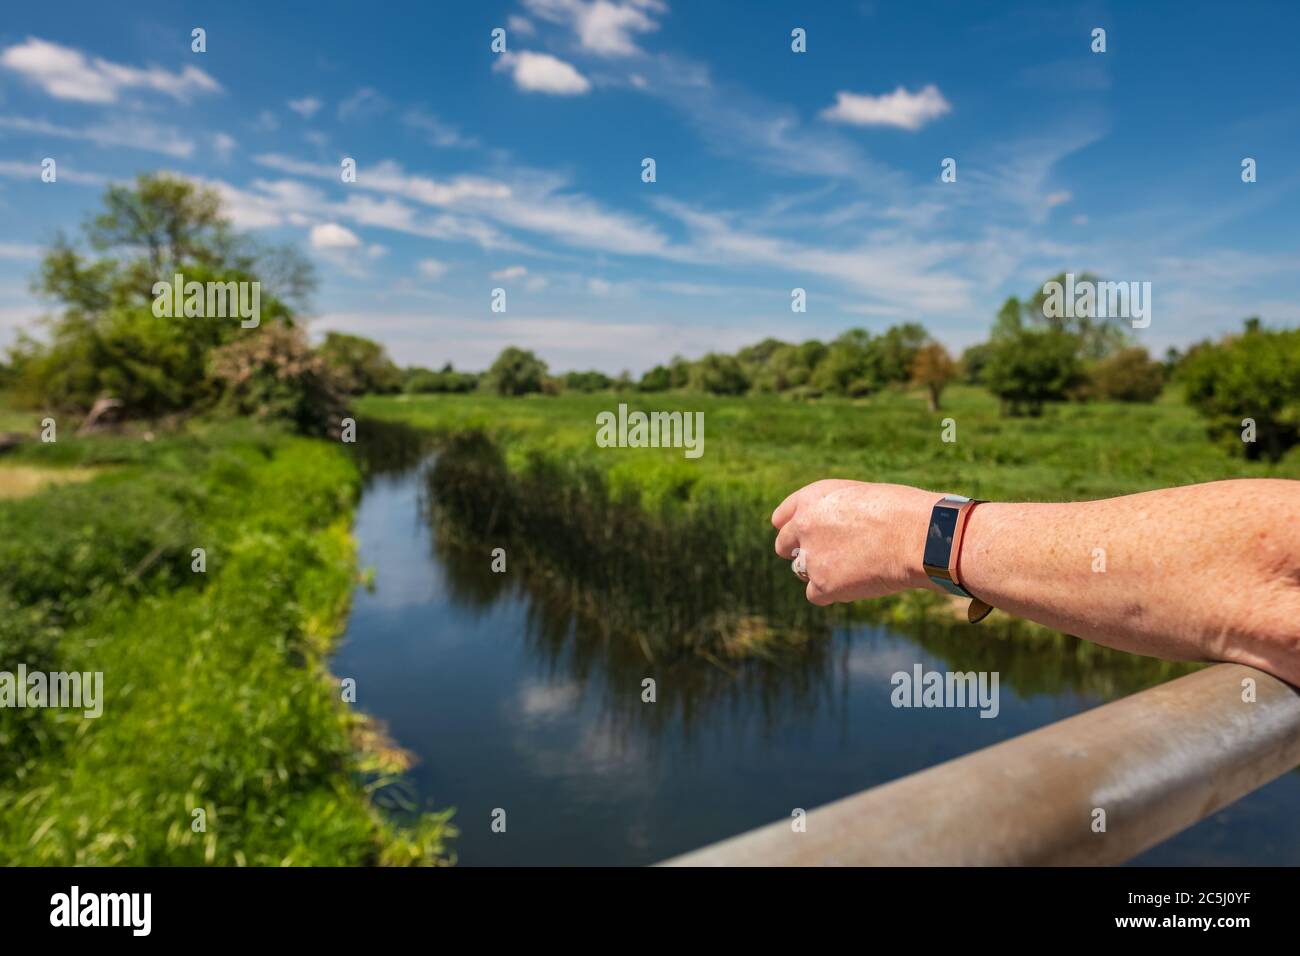 Donna con braccia ripiegate vista su un piccolo ponte fluviale nella campagna inglese. Lei indossa un orologio fitness e le sue braccia sono abbronzate. Foto Stock